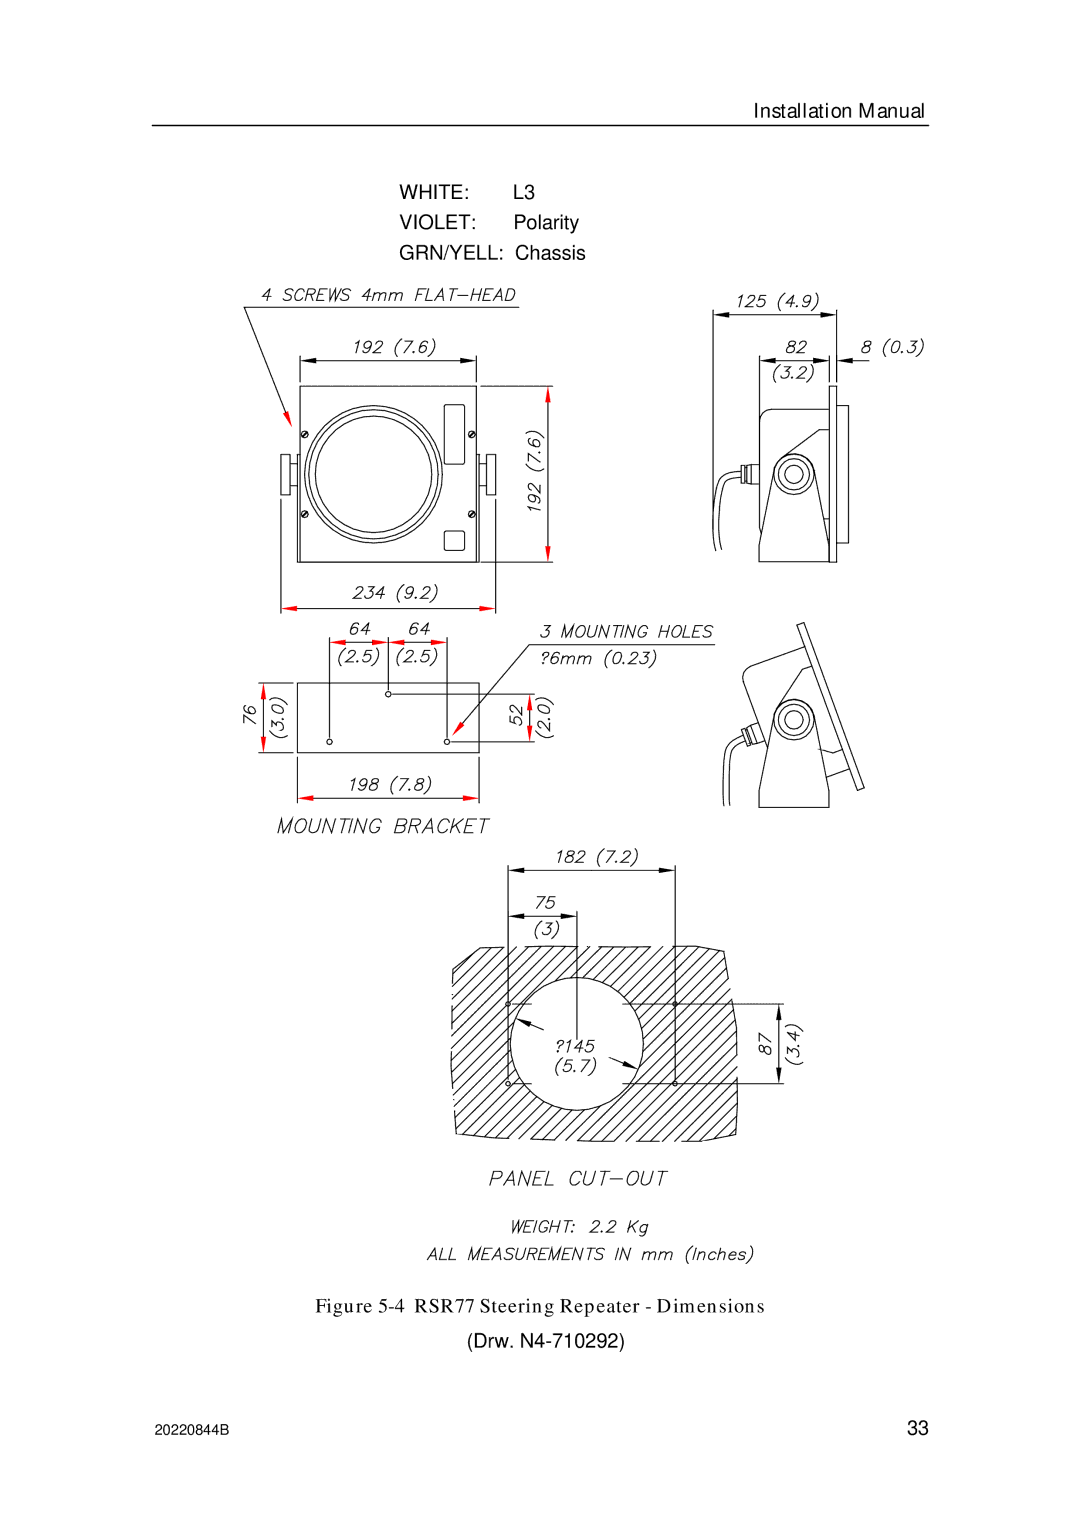 Simrad RGC12 manual RSR77 Steering Repeater Dimensions 